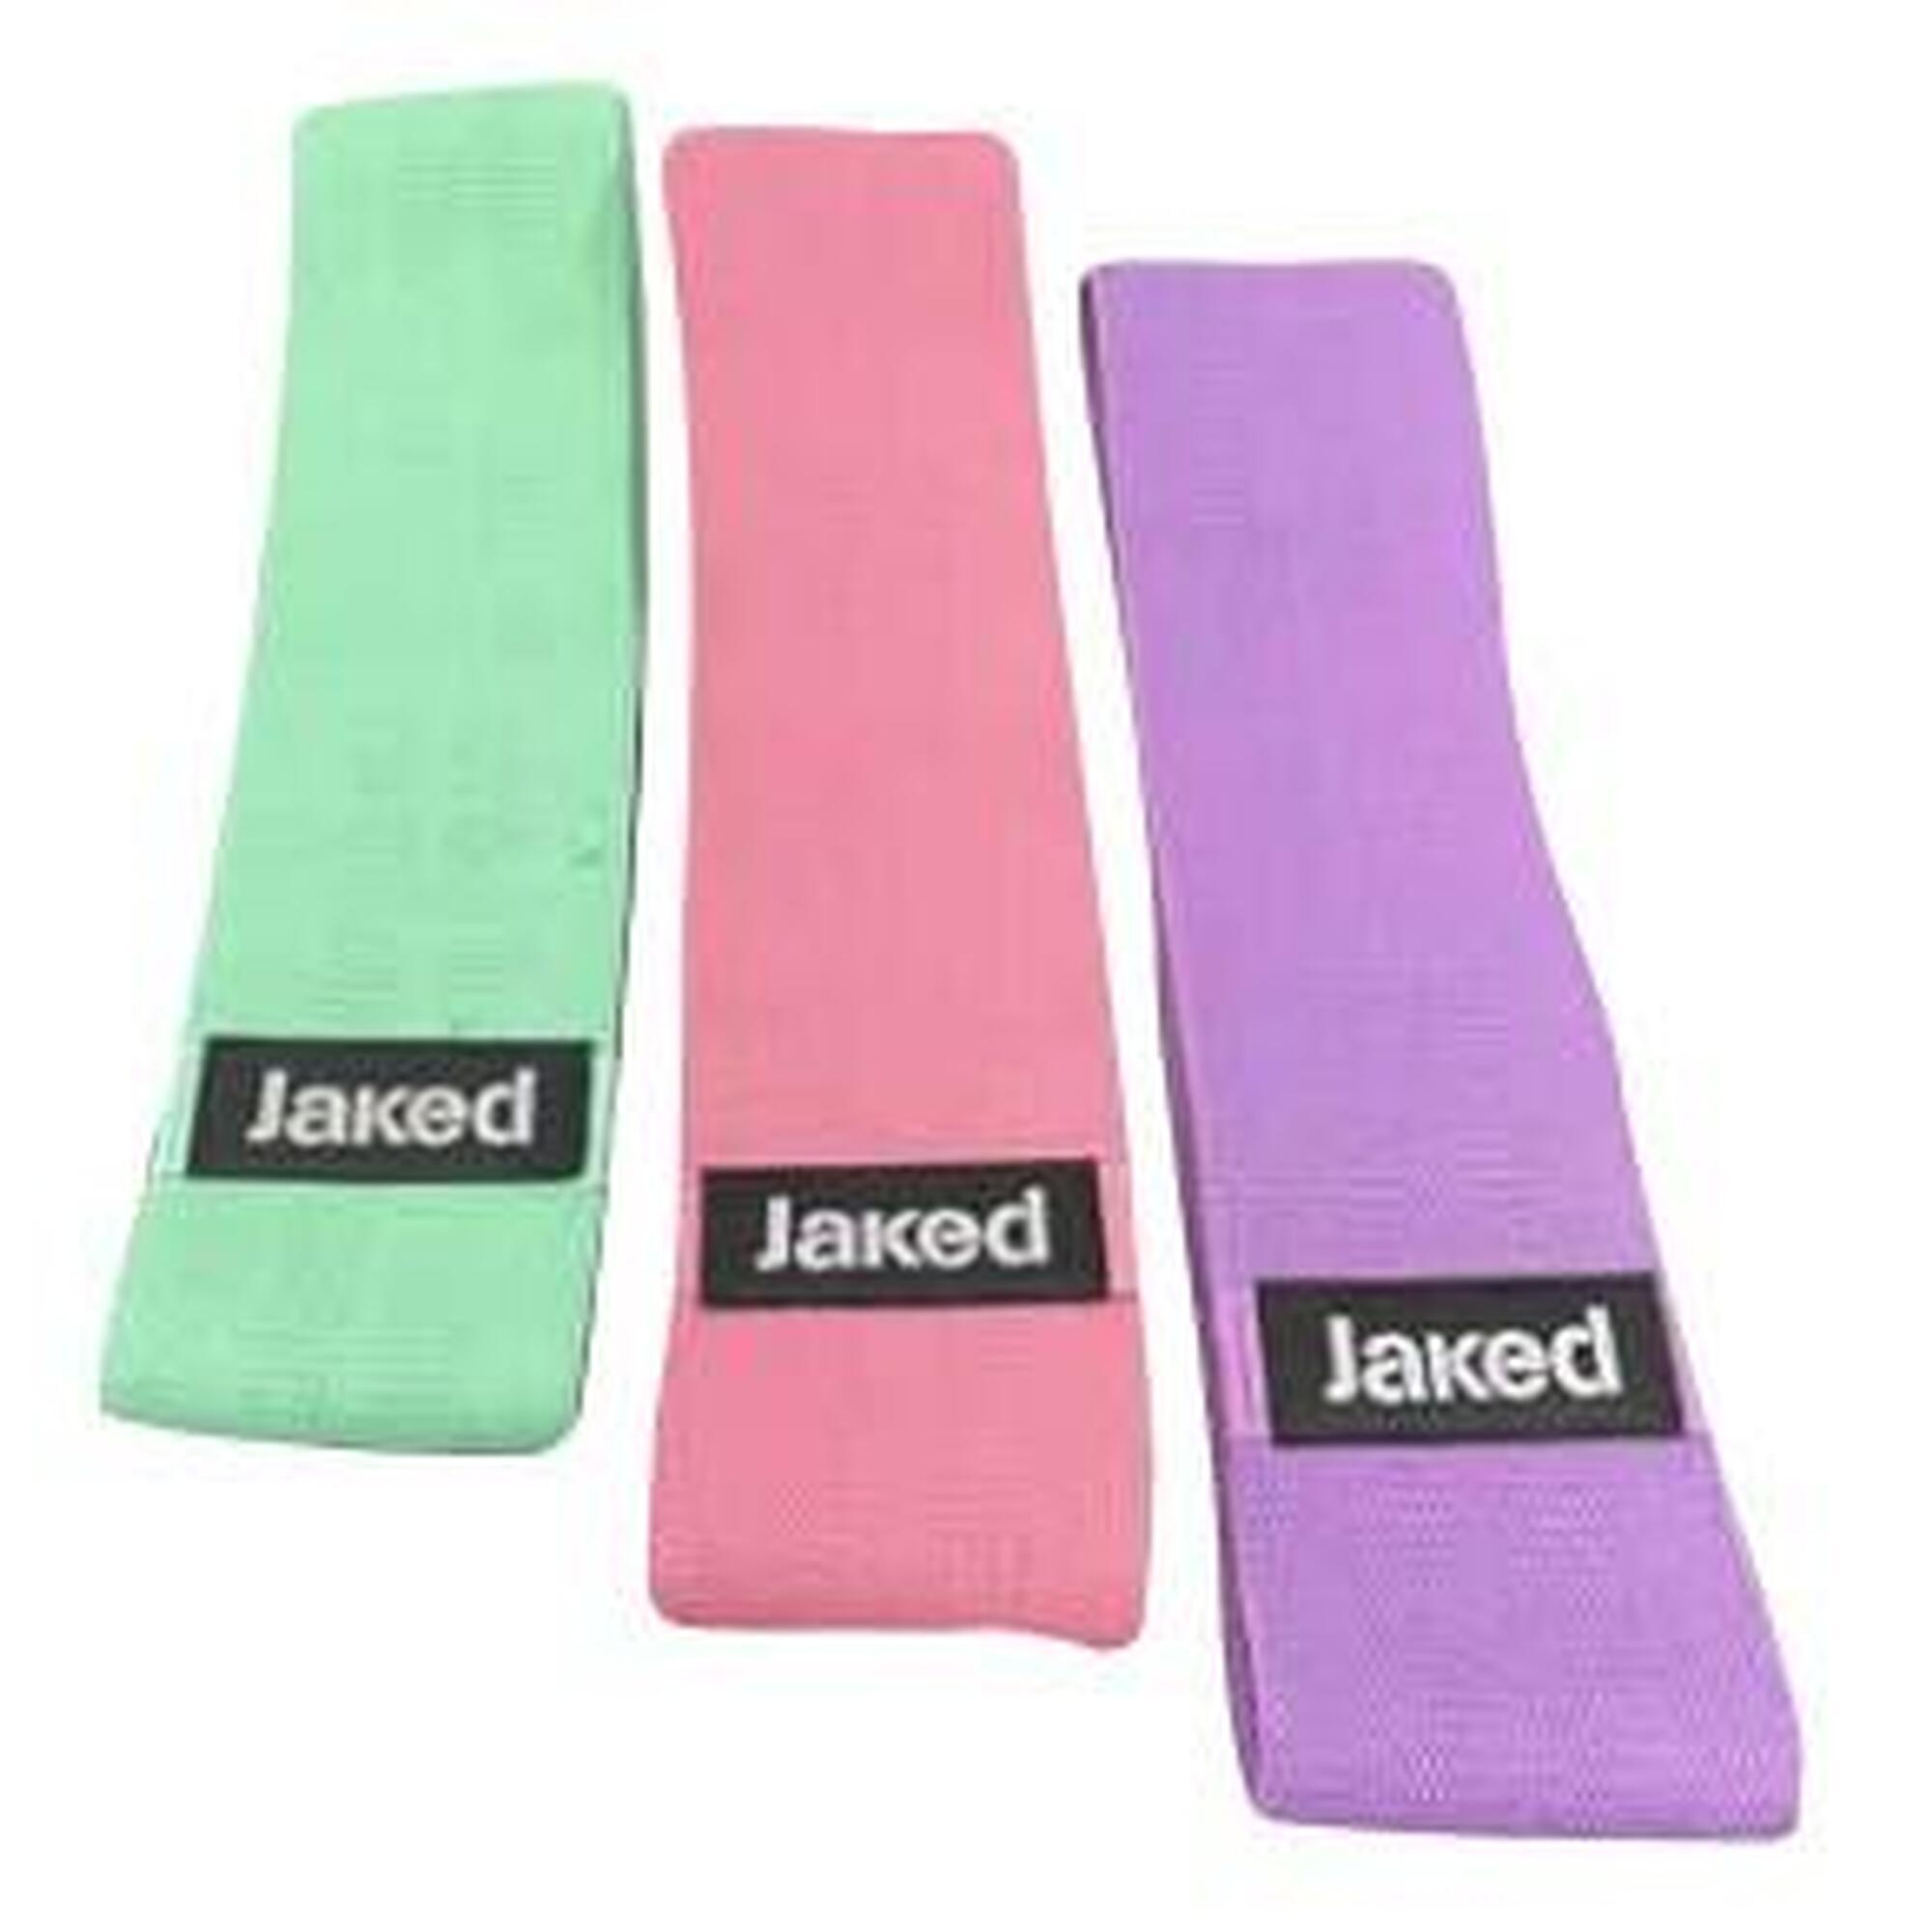 3 級別阻力訓練帶 (三個裝) - 綠色/粉紅色/紫色